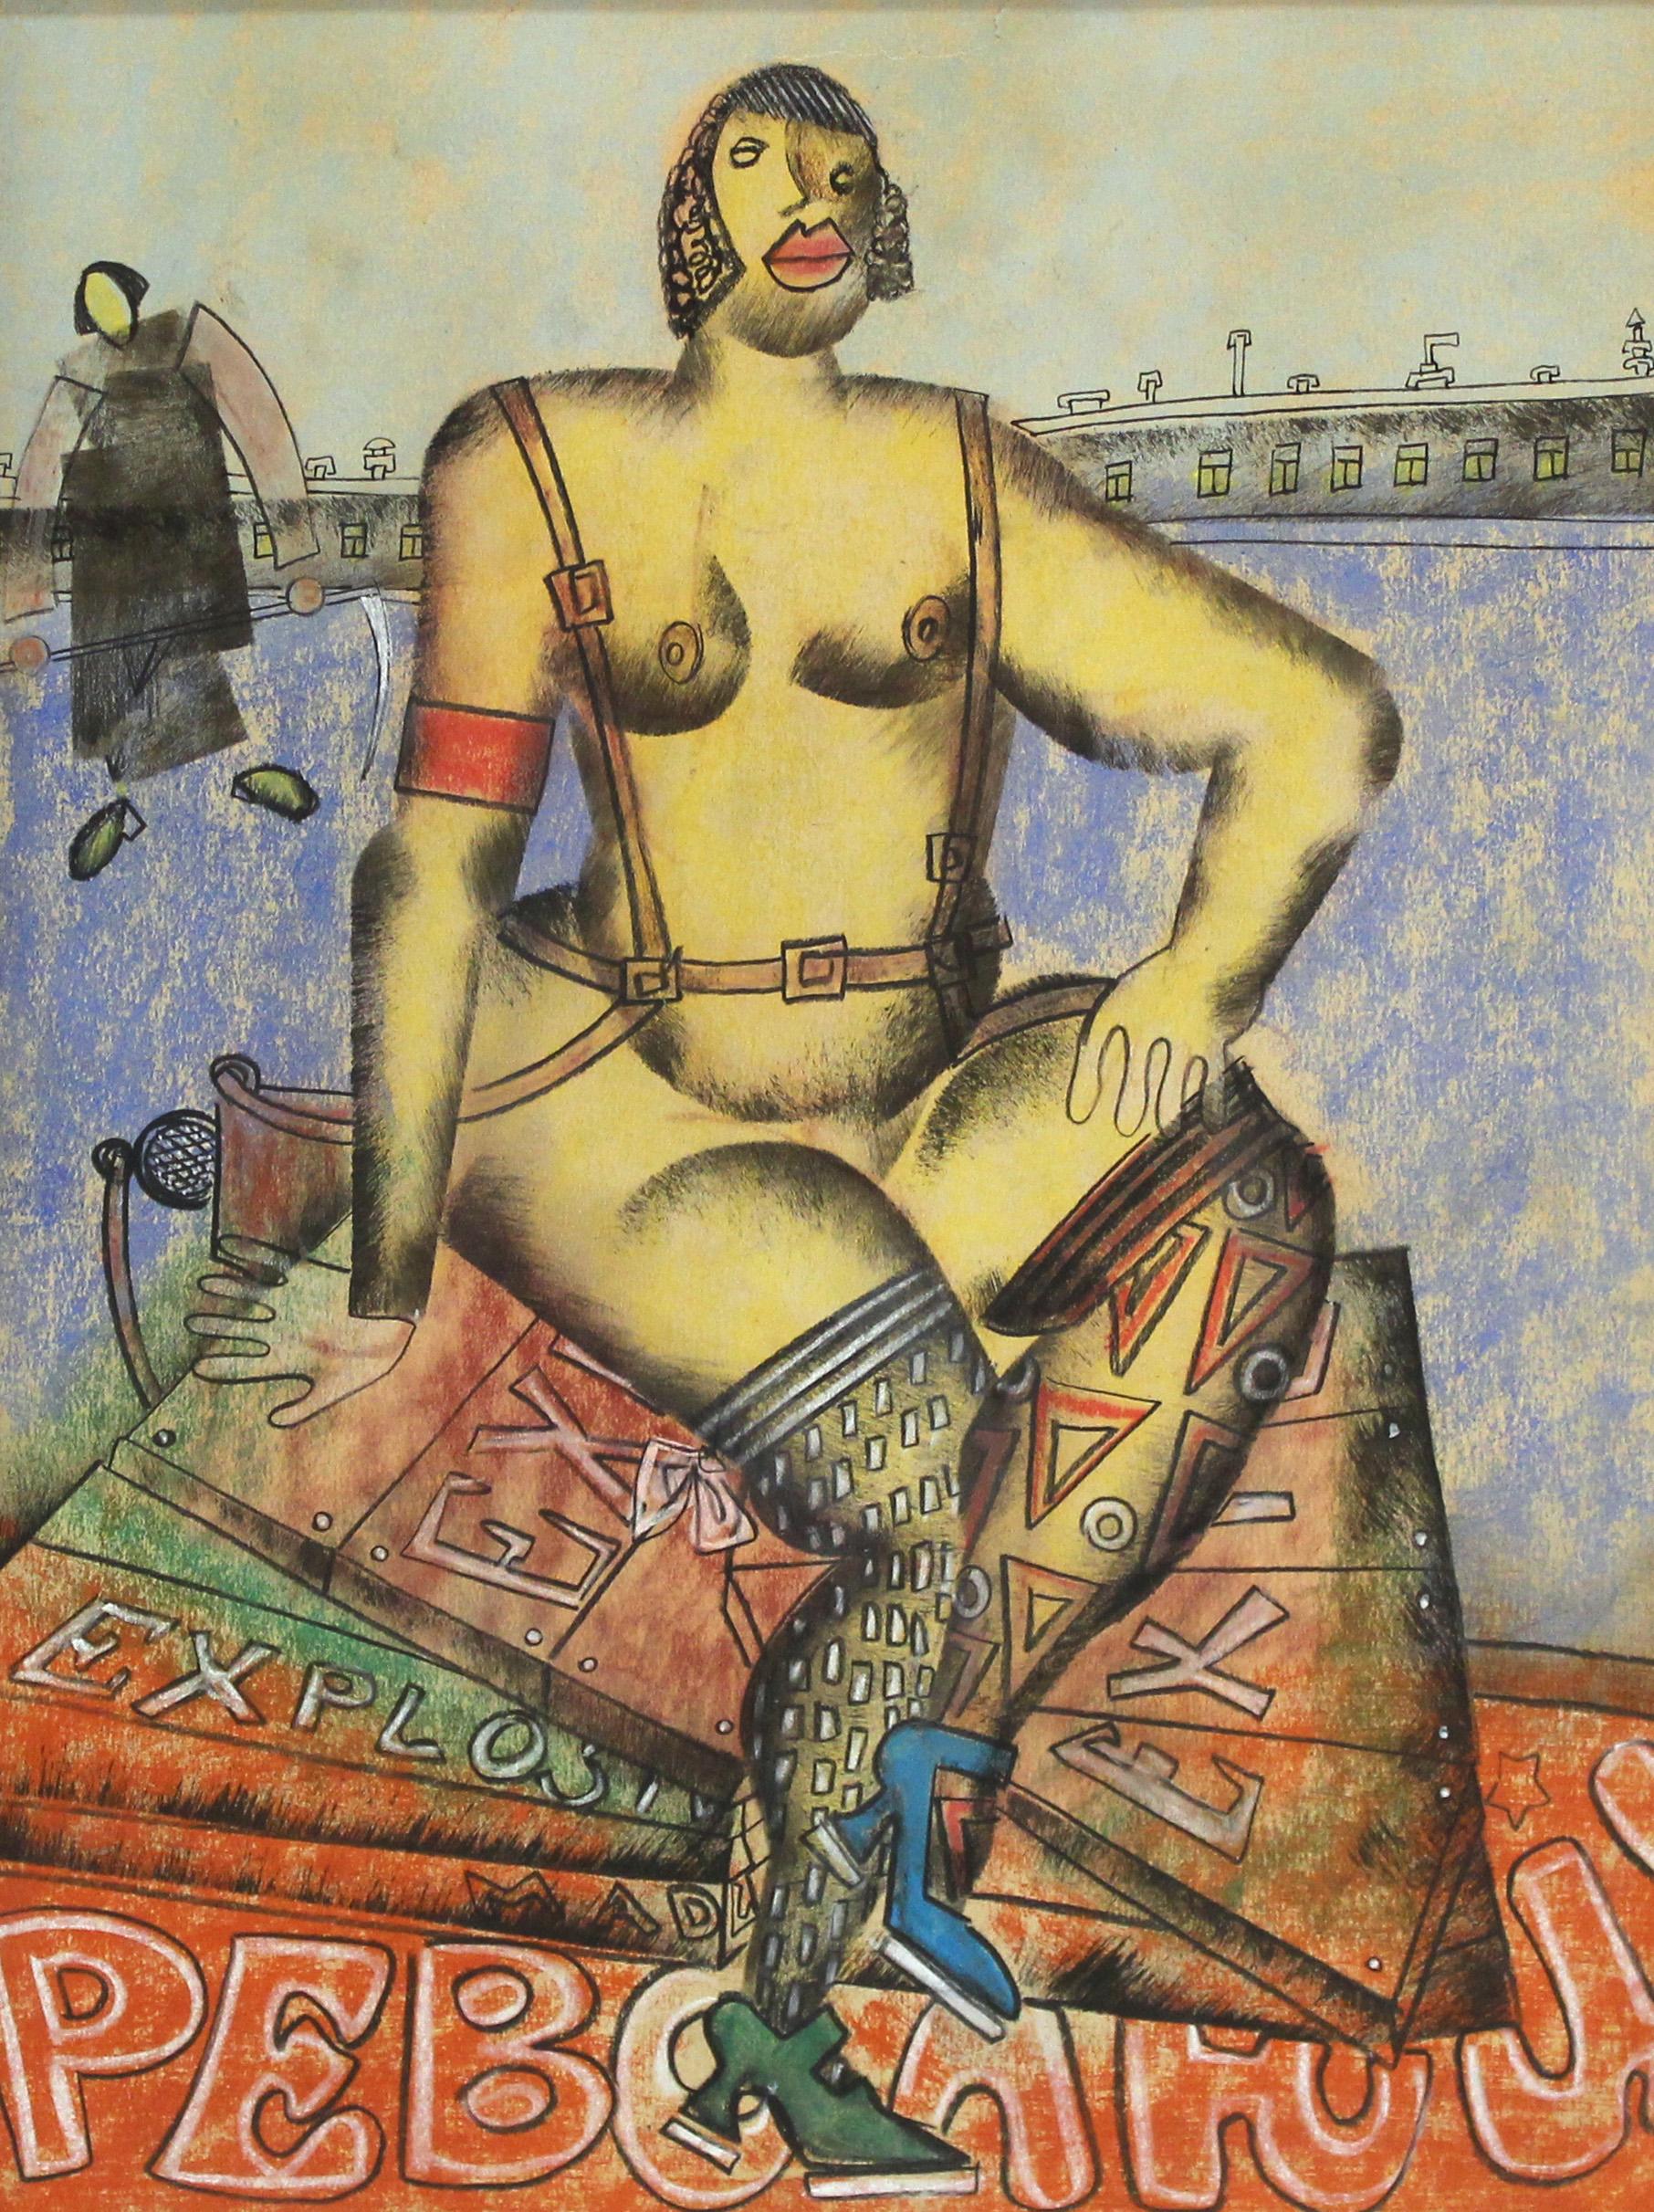 Vladimir Lebedev (1891 - 1967) Œuvre d'avant-garde russe en techniques mixtes sur papier (encre, gouache, crayon) représentant une ouvrière nue assise. L'œuvre comporte des éléments visibles de la propagande bolchevique et a été créée par Lebedev au